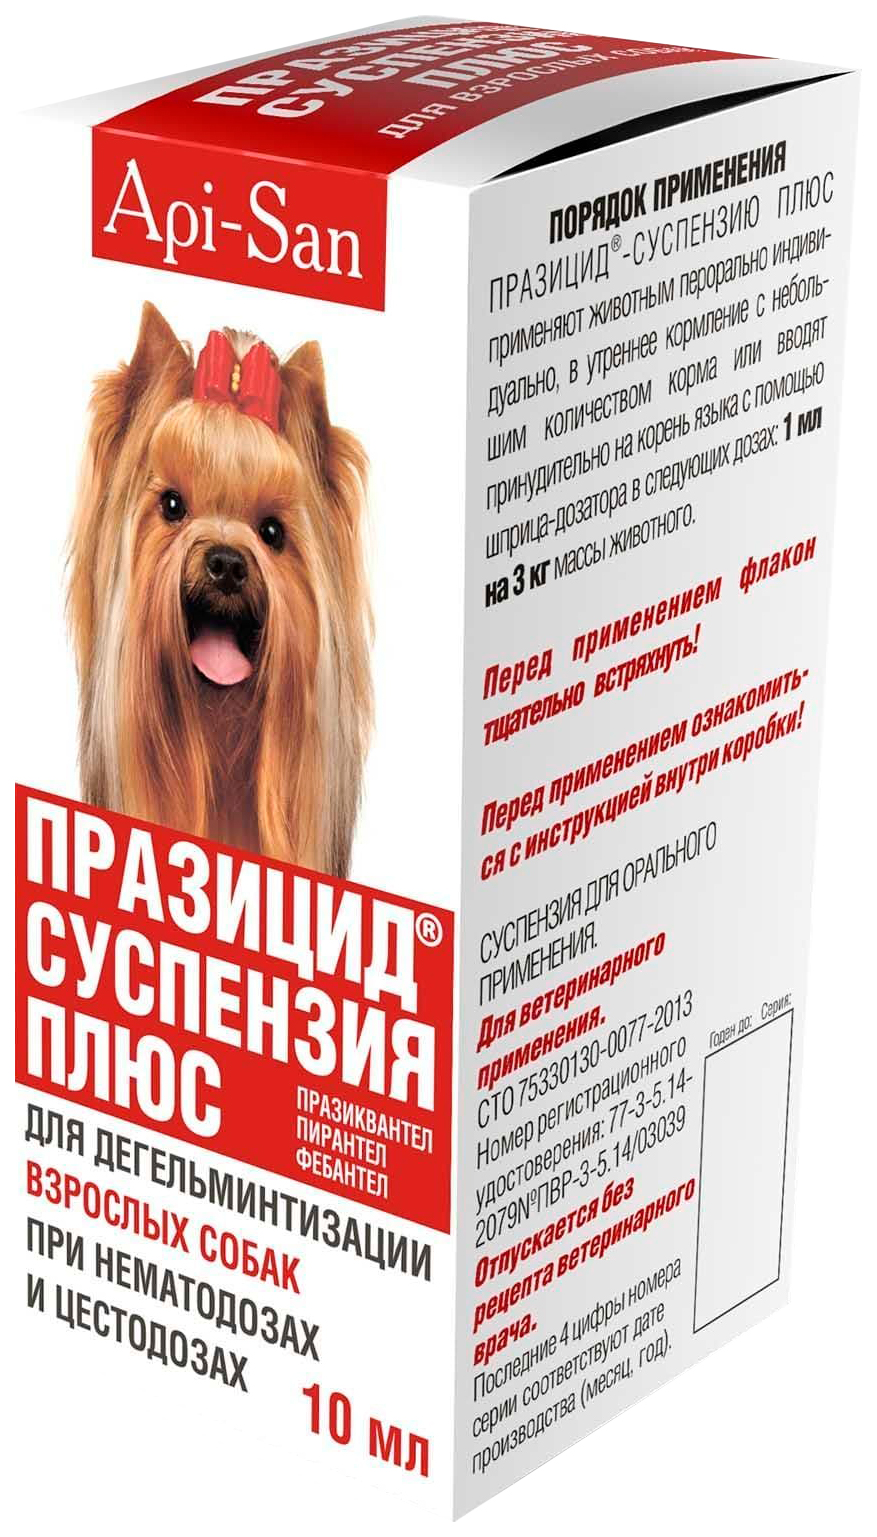 Антигельминтик Празицид Плюс суспензия для собак Api-San, 10мл